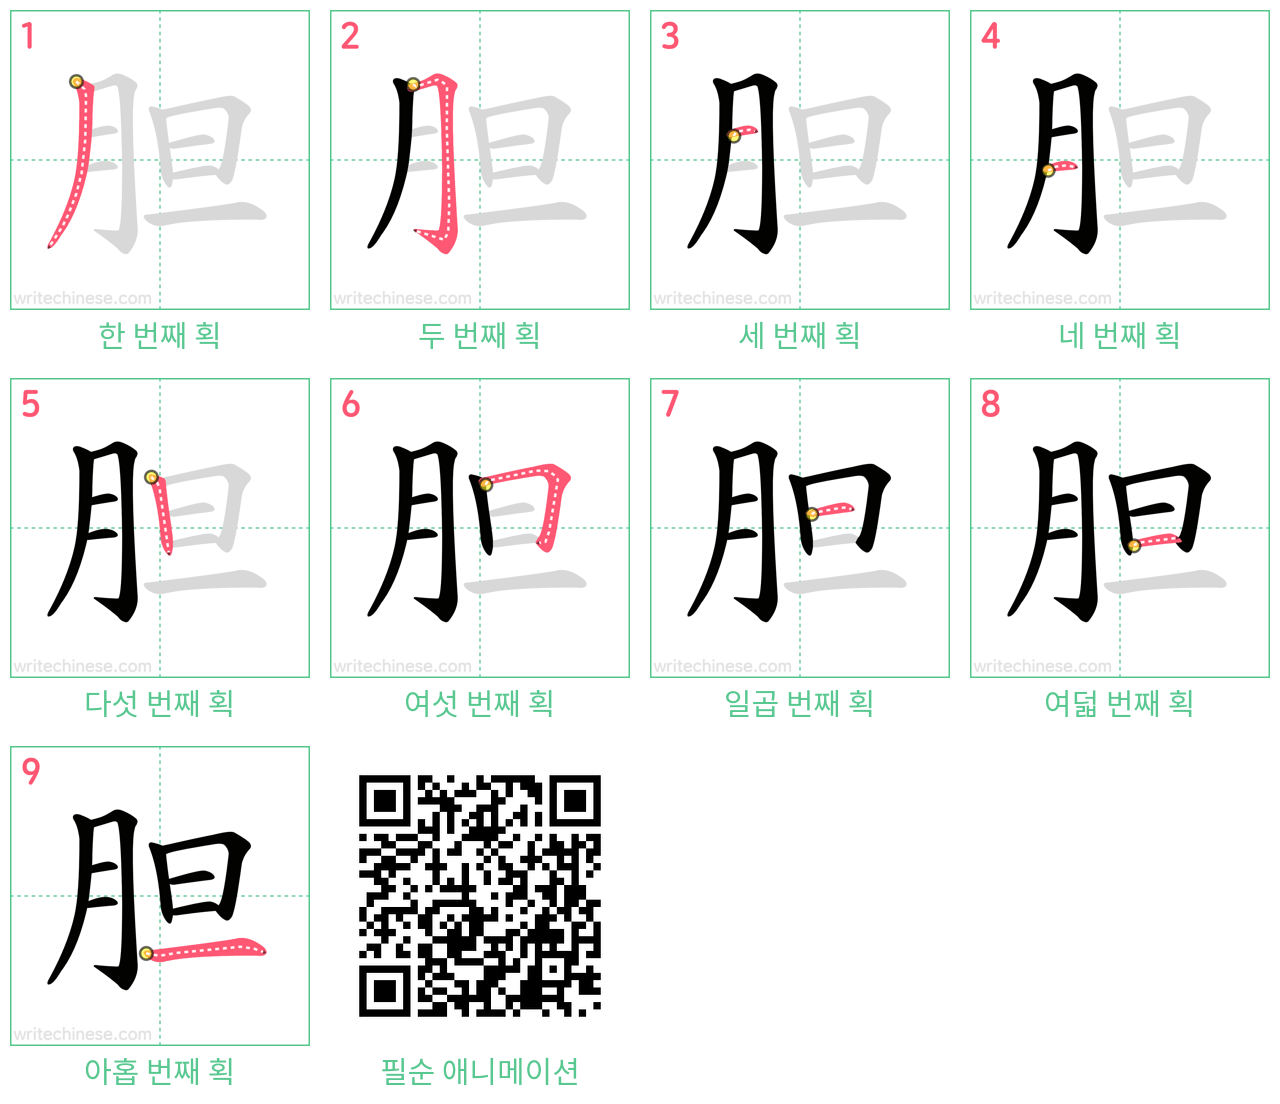 胆 step-by-step stroke order diagrams